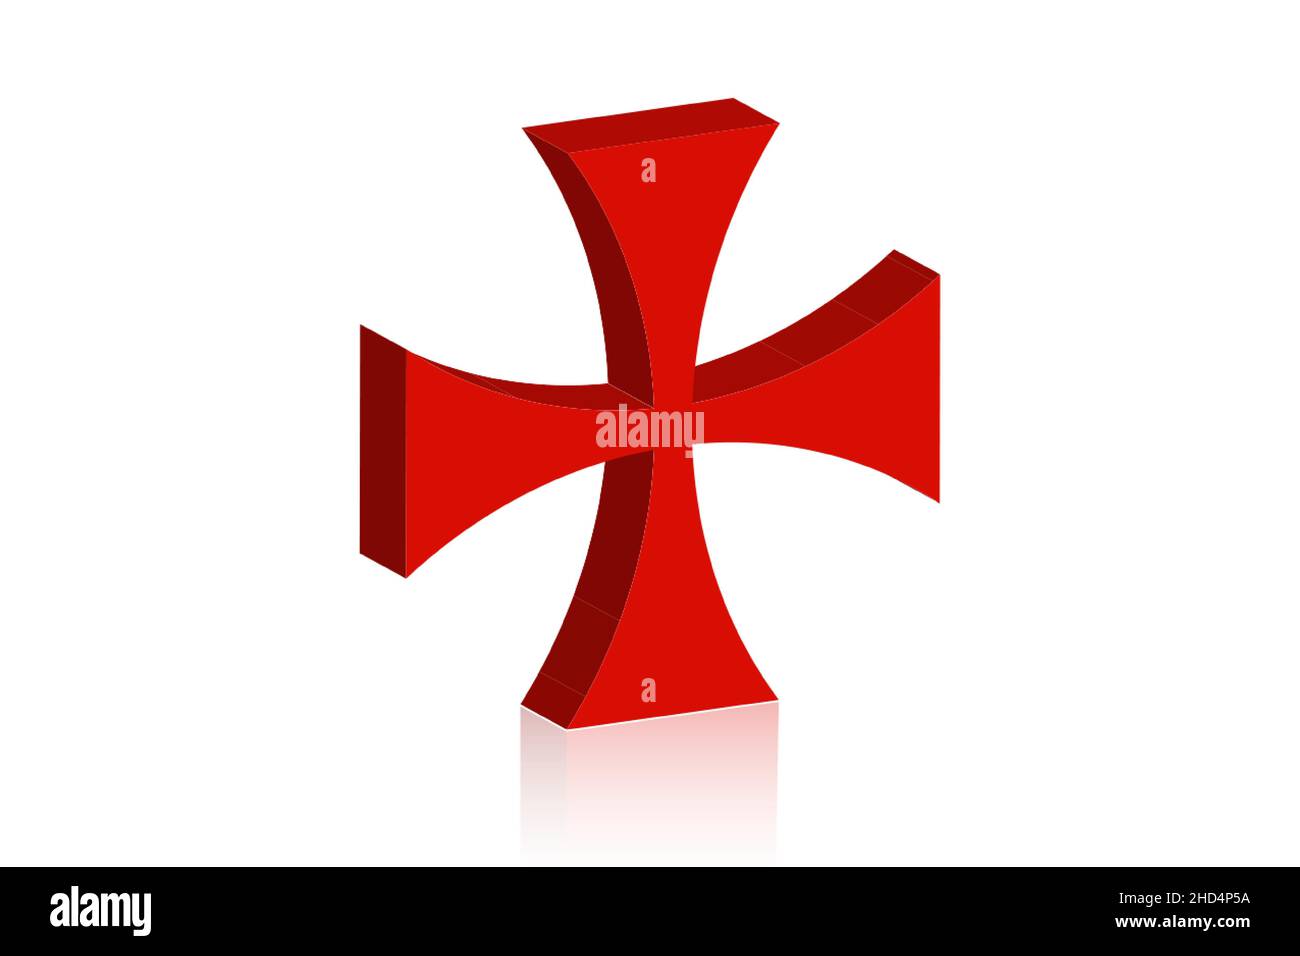 3D Croix des Templiers.Patea croix rouge symbole de l'ordre des Templiers.Ordre spirituel chevalrique fondé en Terre Sainte en 1119.Vecteur isolé sur W Illustration de Vecteur